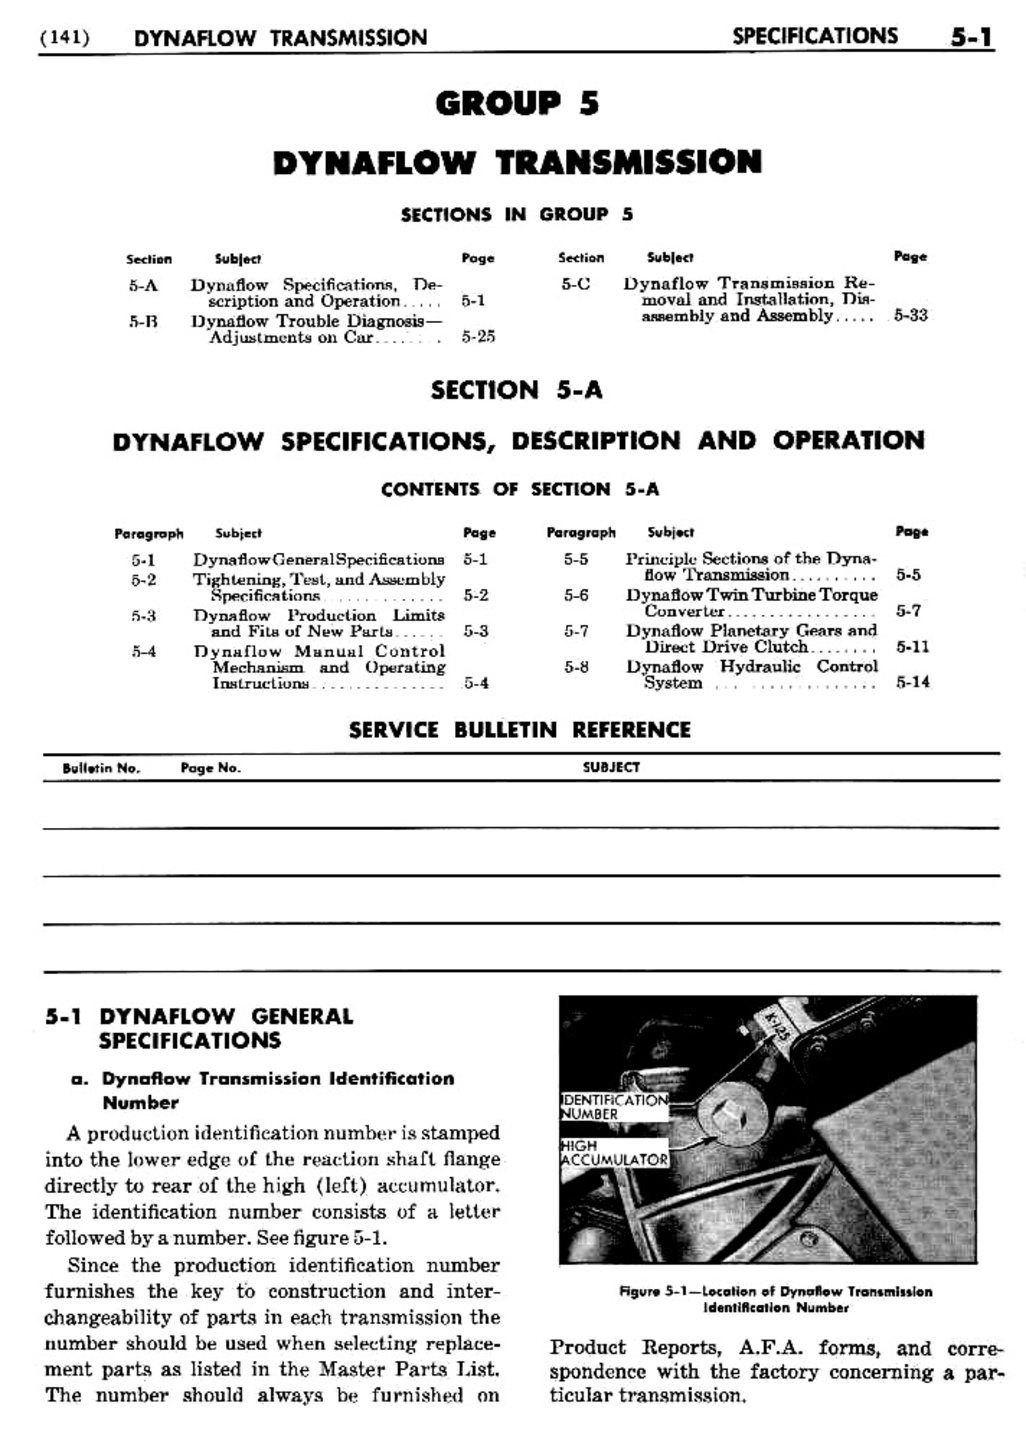 n_06 1955 Buick Shop Manual - Dynaflow-001-001.jpg